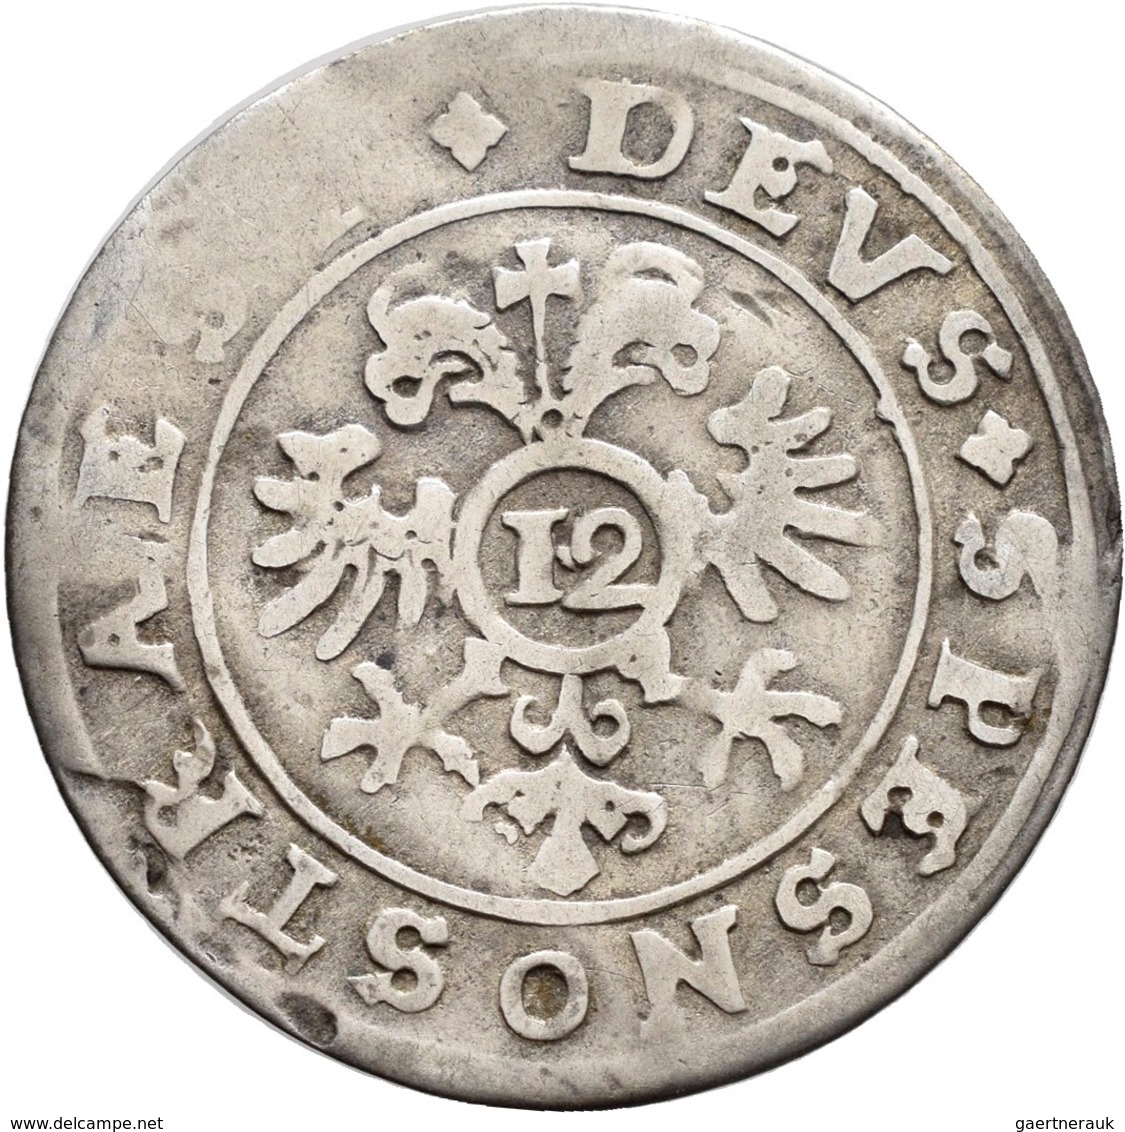 Schweiz: Lot 6 Stück; Basel 1/3 Taler 1764, Bern 1/4 Taler 1758, Helvetische Republik 10 Batzen 1799